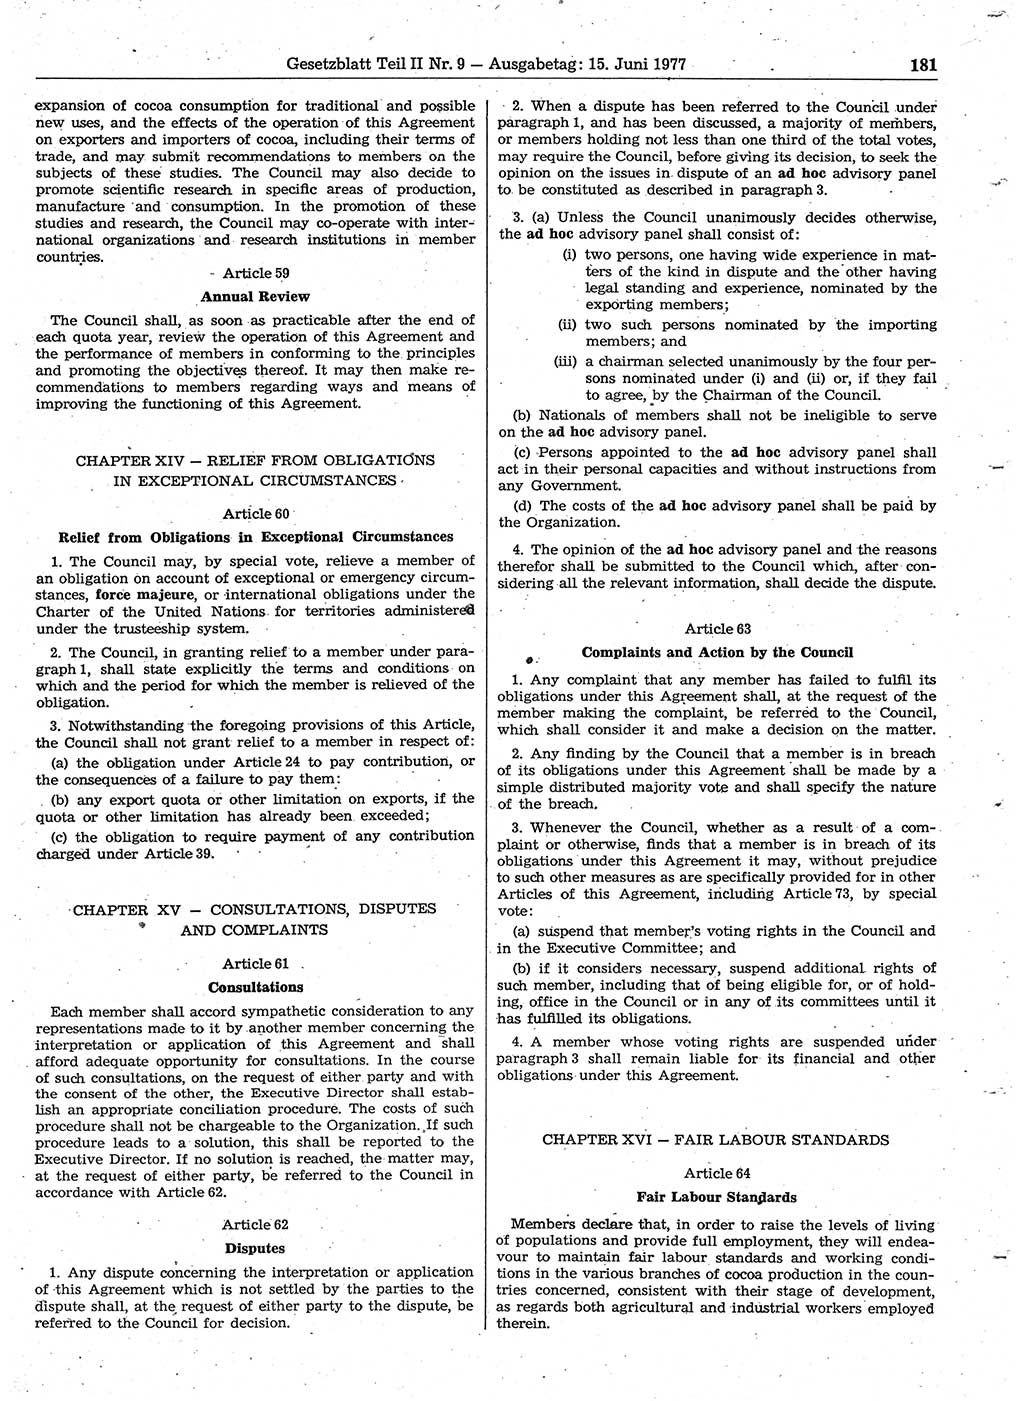 Gesetzblatt (GBl.) der Deutschen Demokratischen Republik (DDR) Teil ⅠⅠ 1977, Seite 181 (GBl. DDR ⅠⅠ 1977, S. 181)